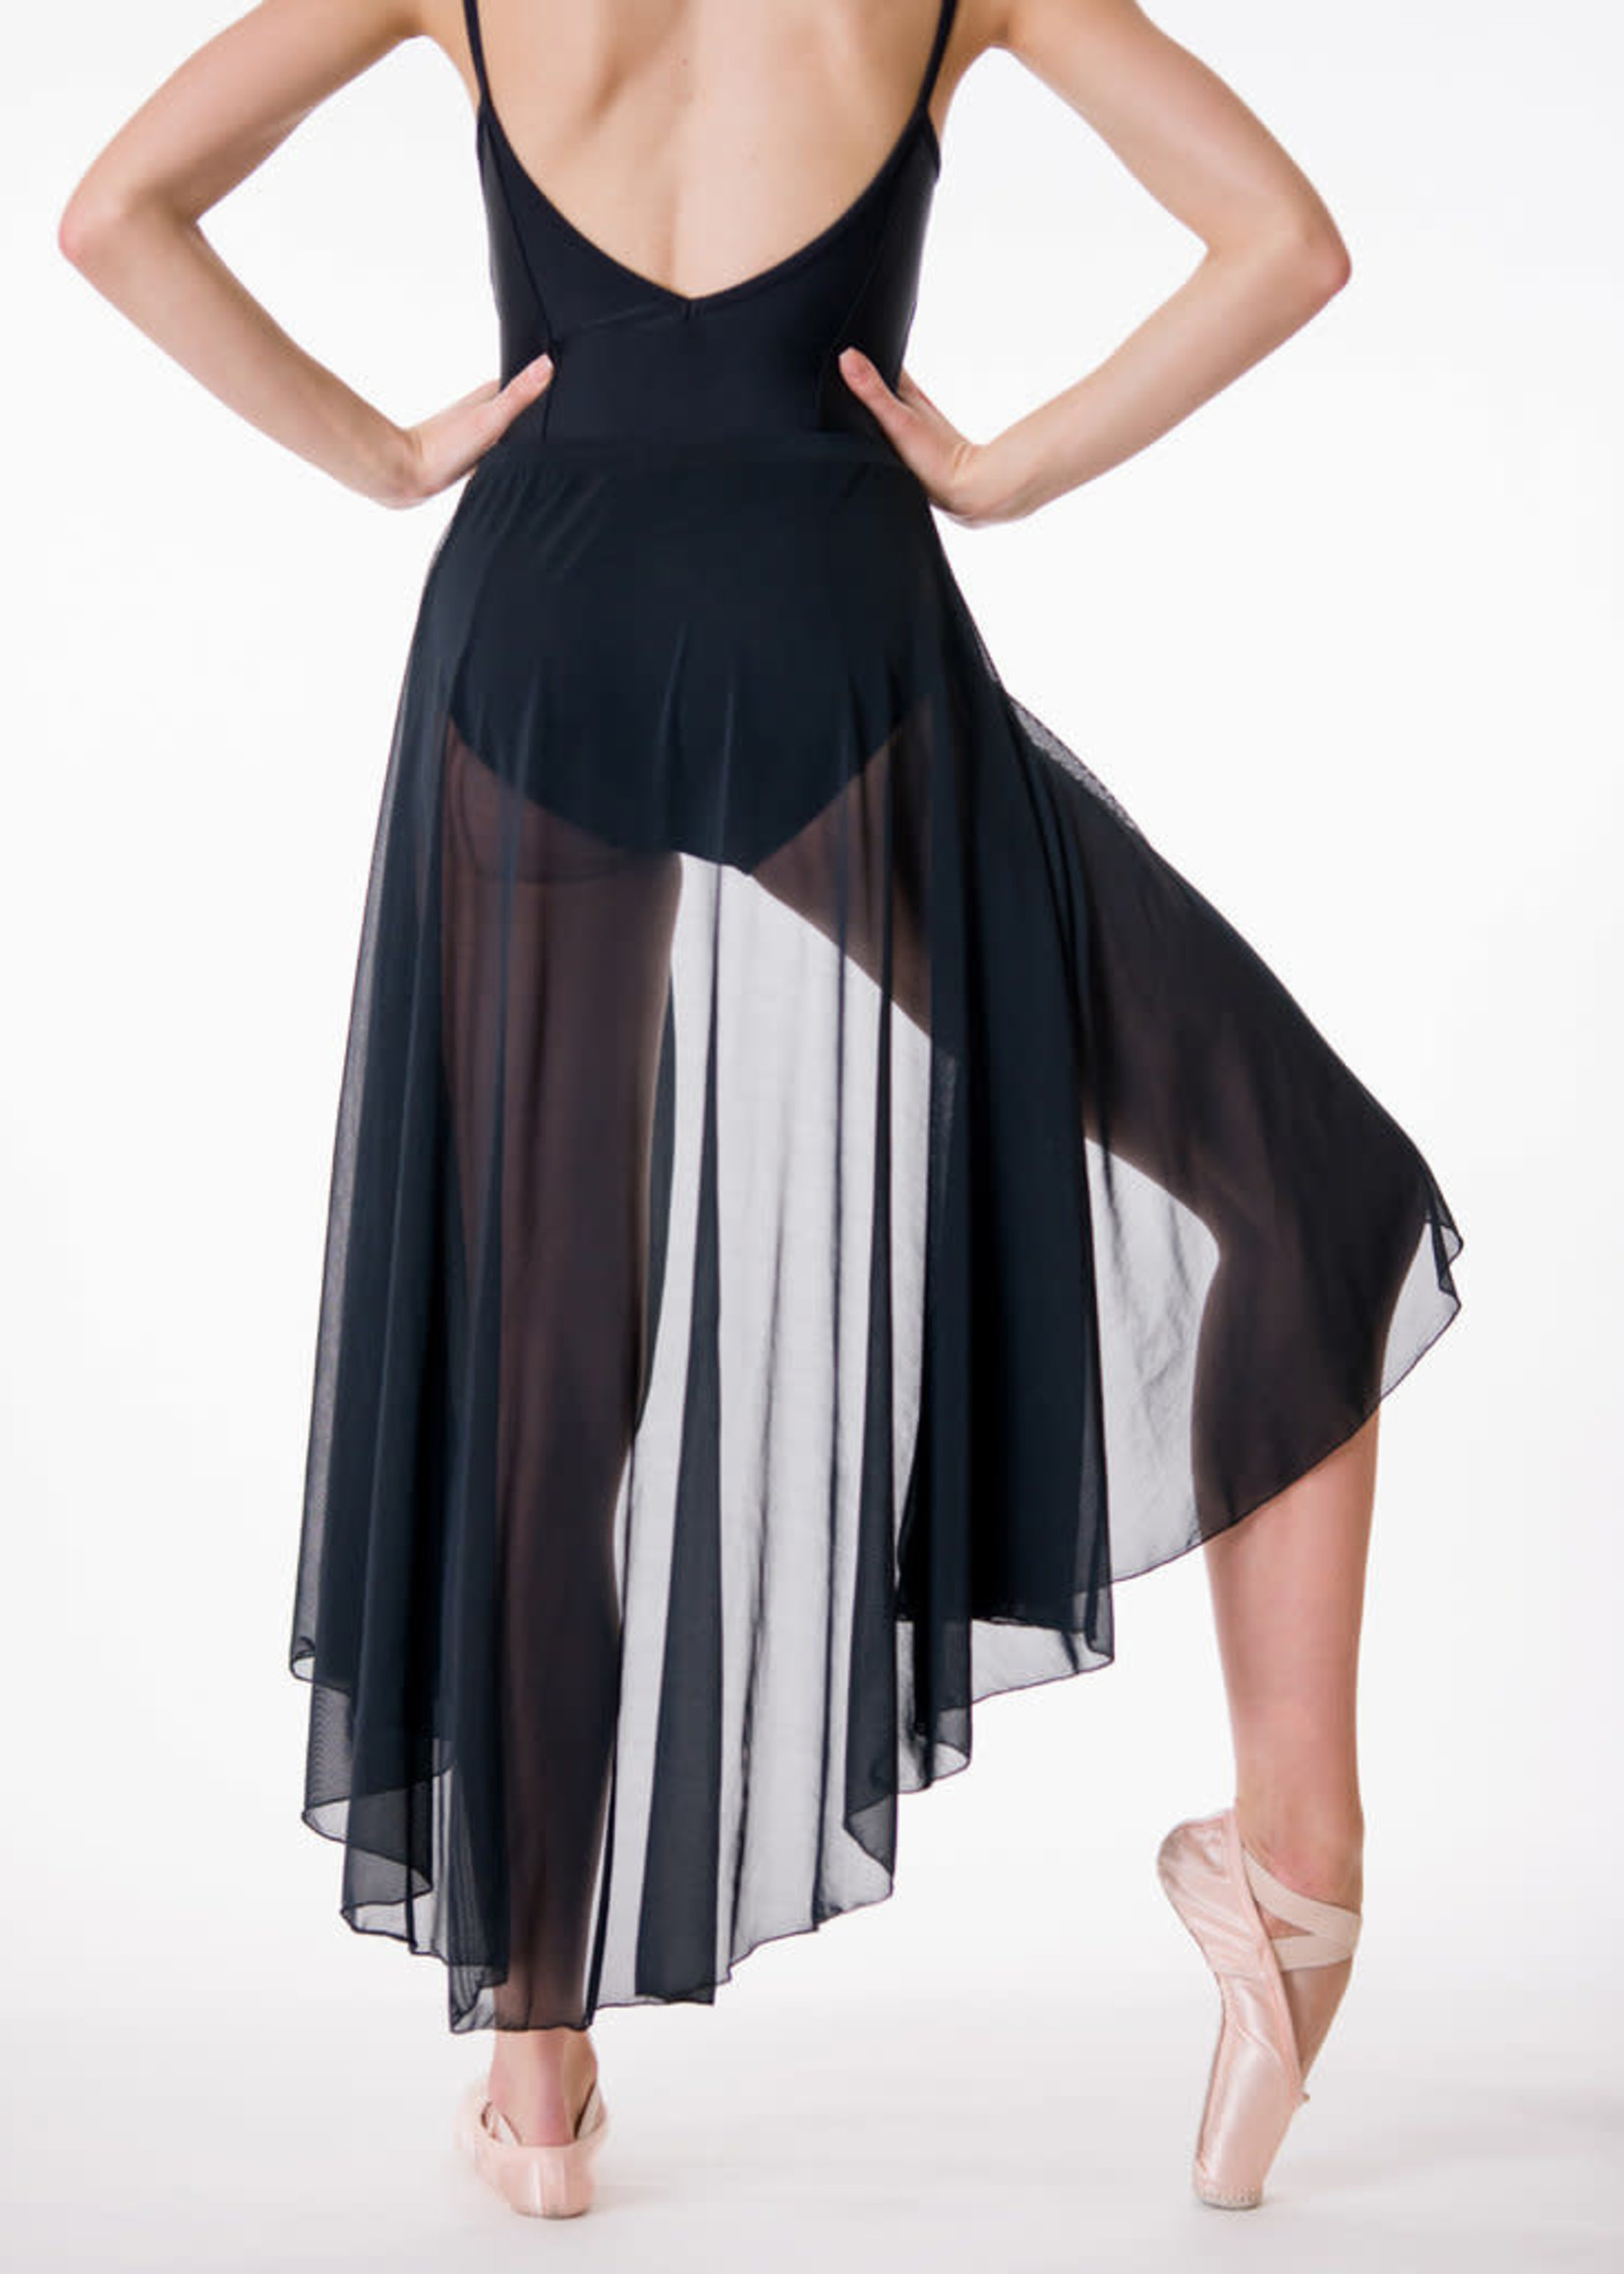 Suffolk Adult Contemporary Skirt